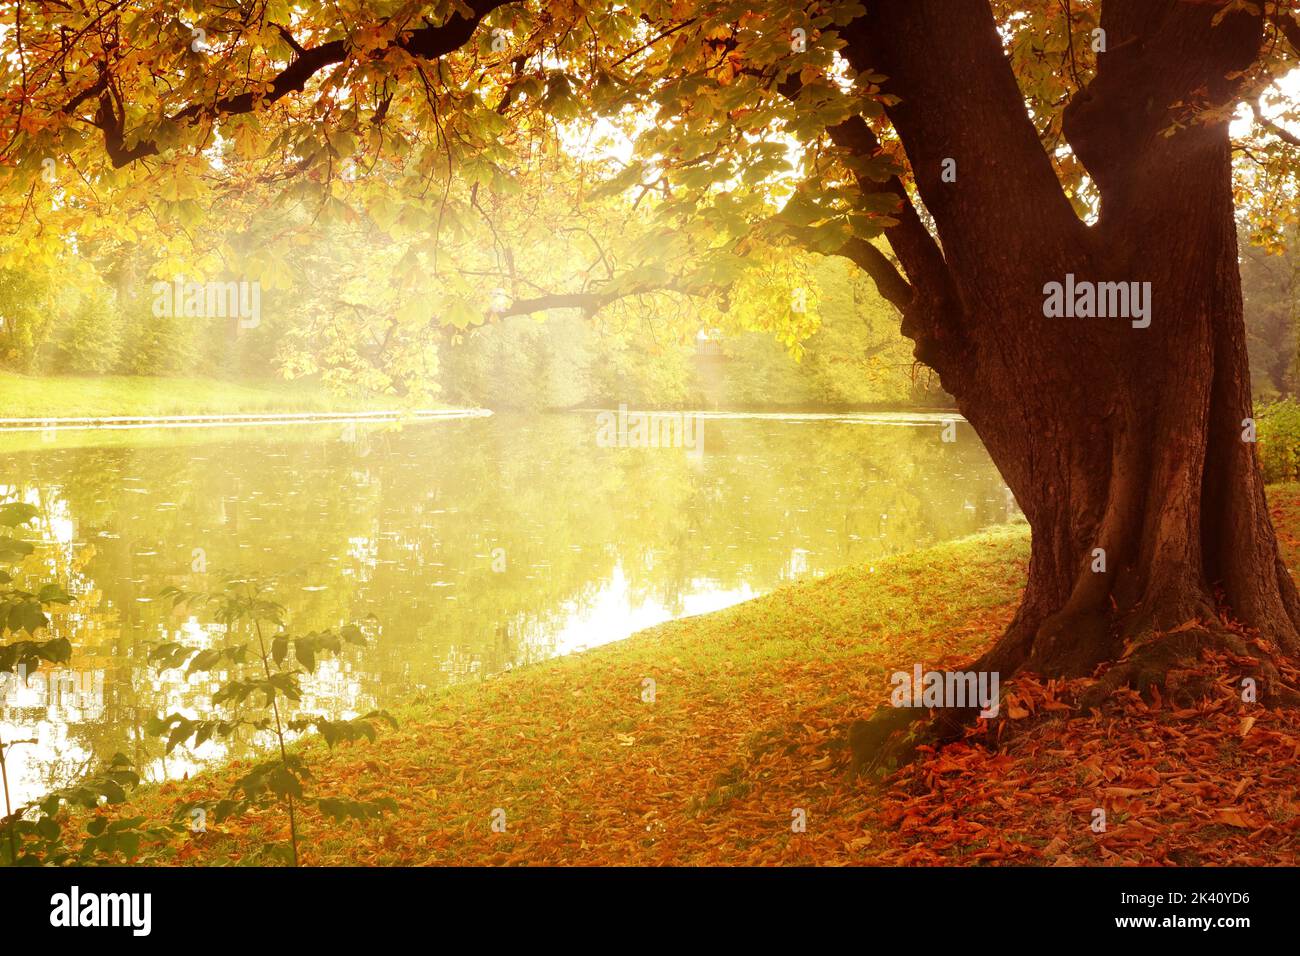 Herbstlandschaft mit Bäumen mit Blättern in Herbstfarben und buntem Laub und Sonnenlicht an schönen sonnigen Tagen Stockfoto